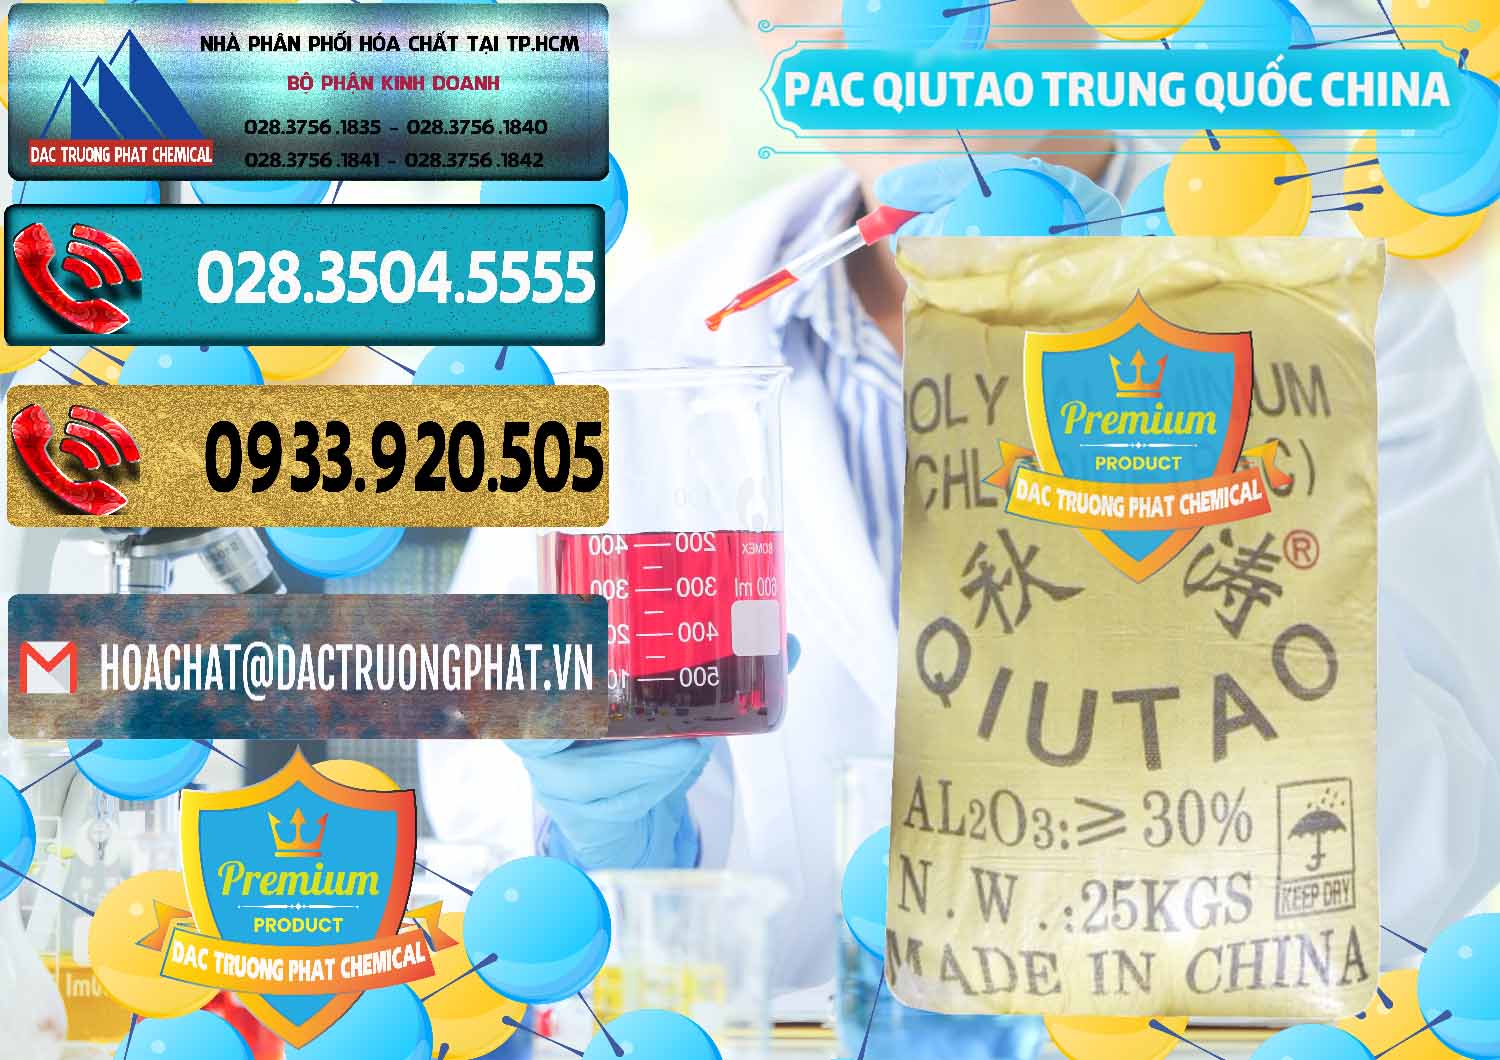 Cty cung cấp và bán PAC - Polyaluminium Chloride Qiutao Trung Quốc China - 0267 - Cty phân phối & bán hóa chất tại TP.HCM - hoachatdetnhuom.com